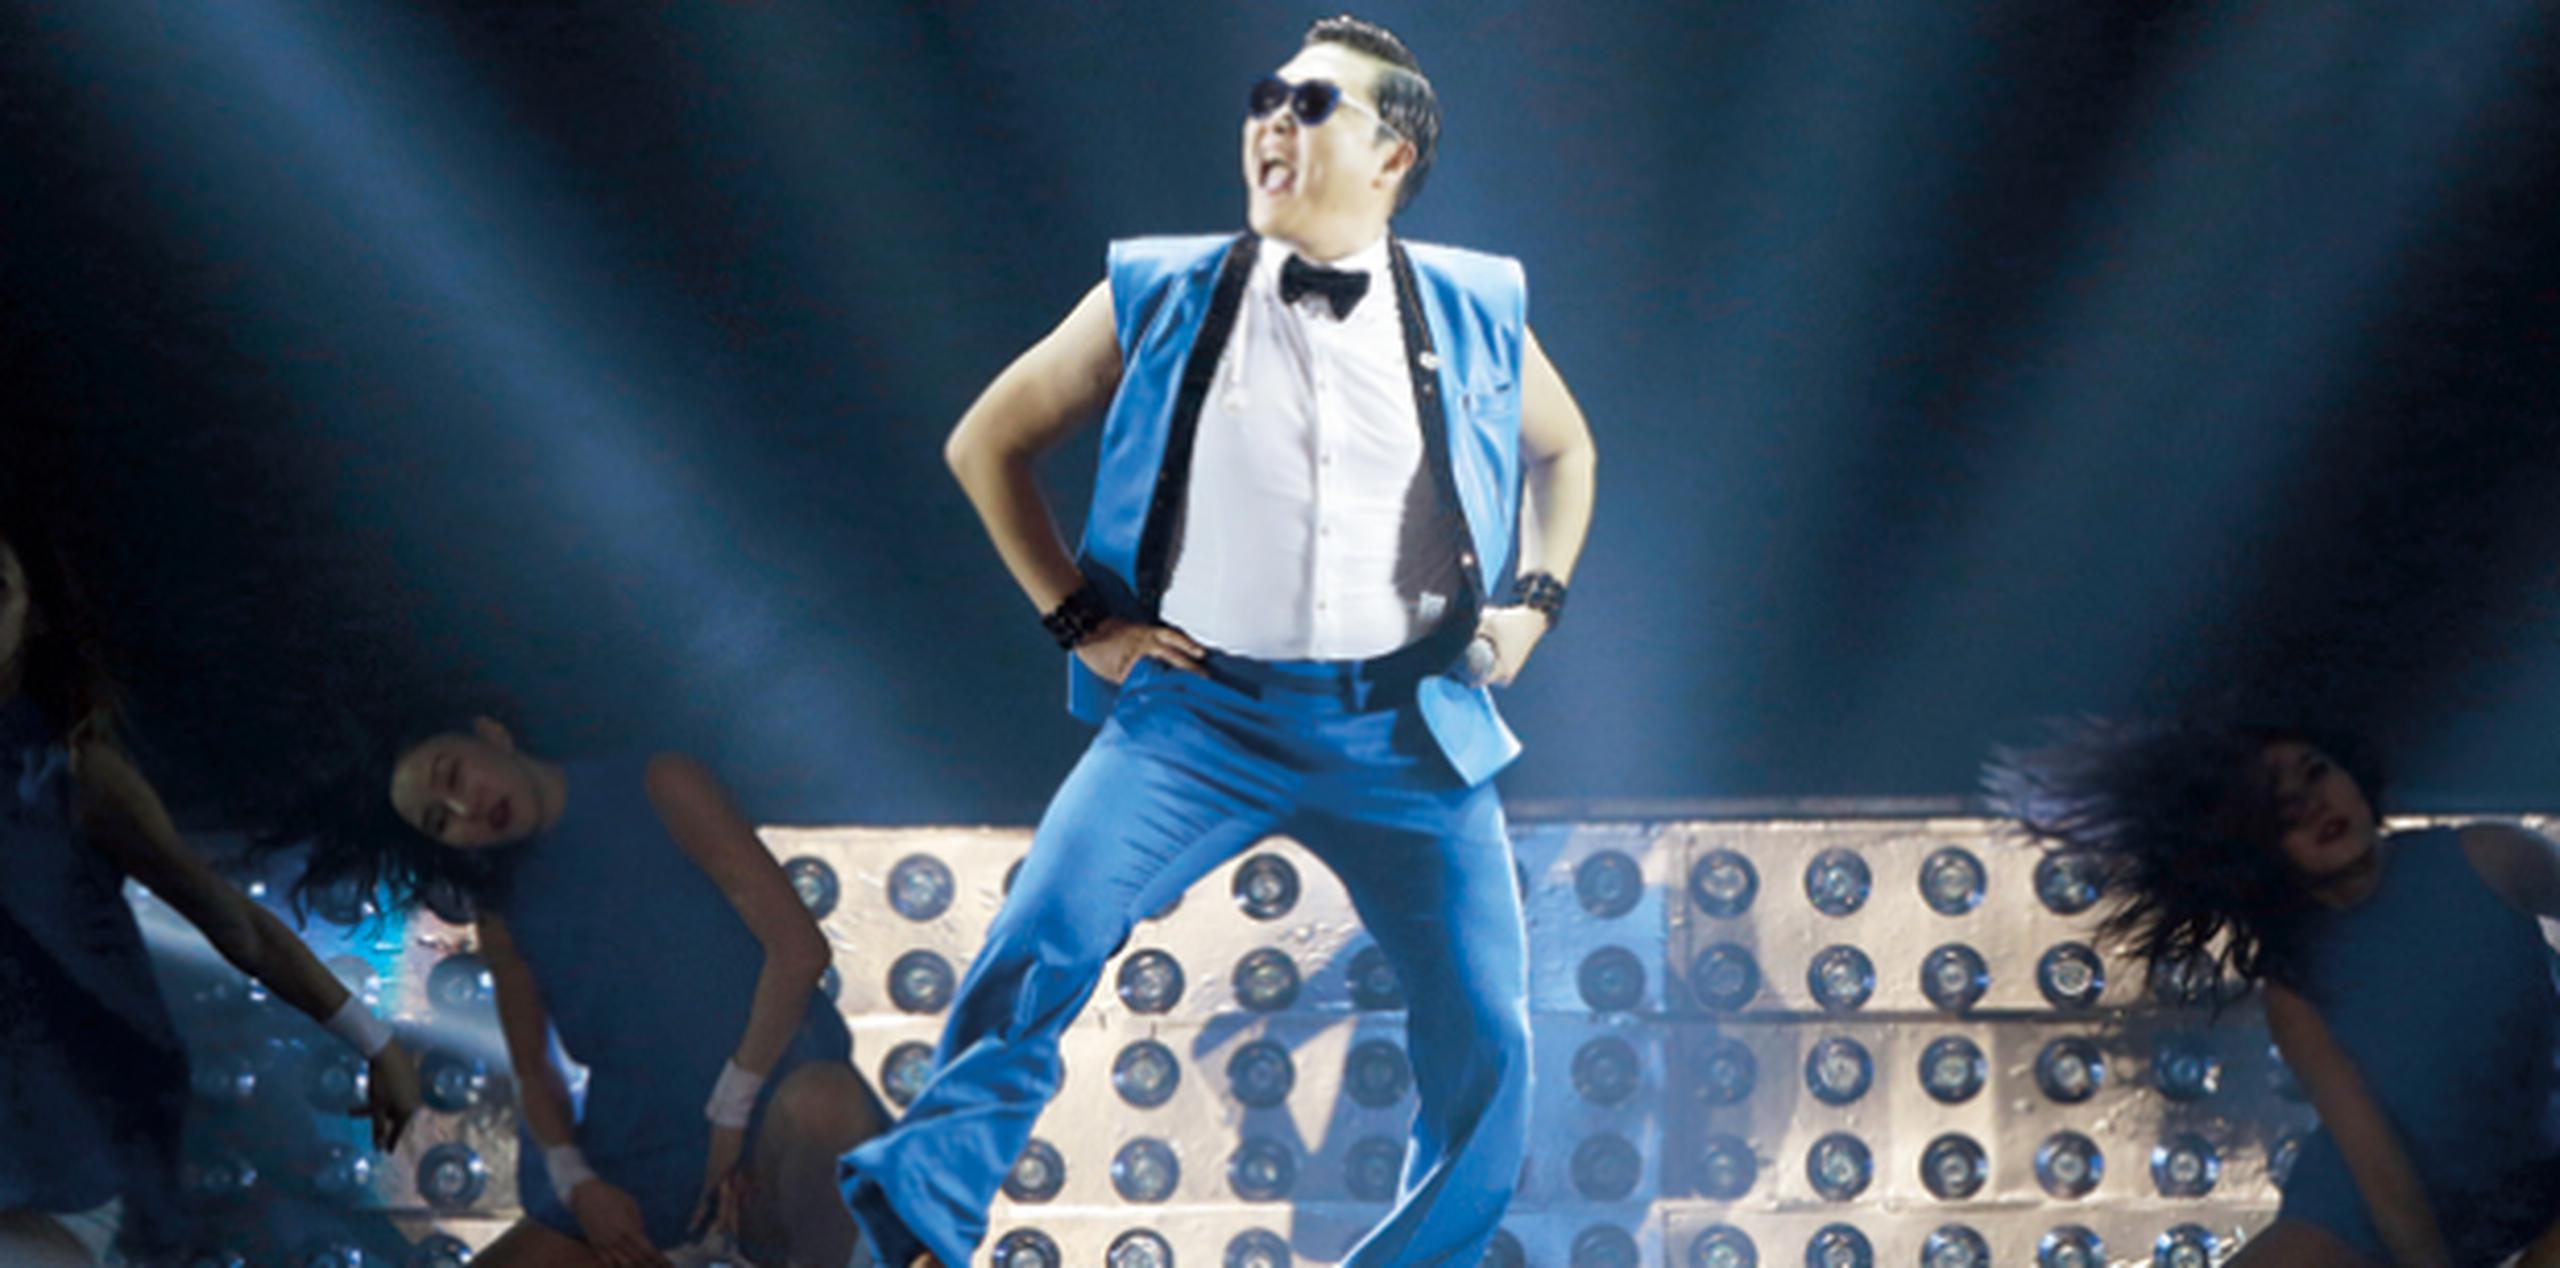 "Gangnam Style", incluido en el disco "PSY 6", tuvo 2,460 millones de vistas en YouTube, más que cualquier otro video en la historia de este servicio. (Archivo)